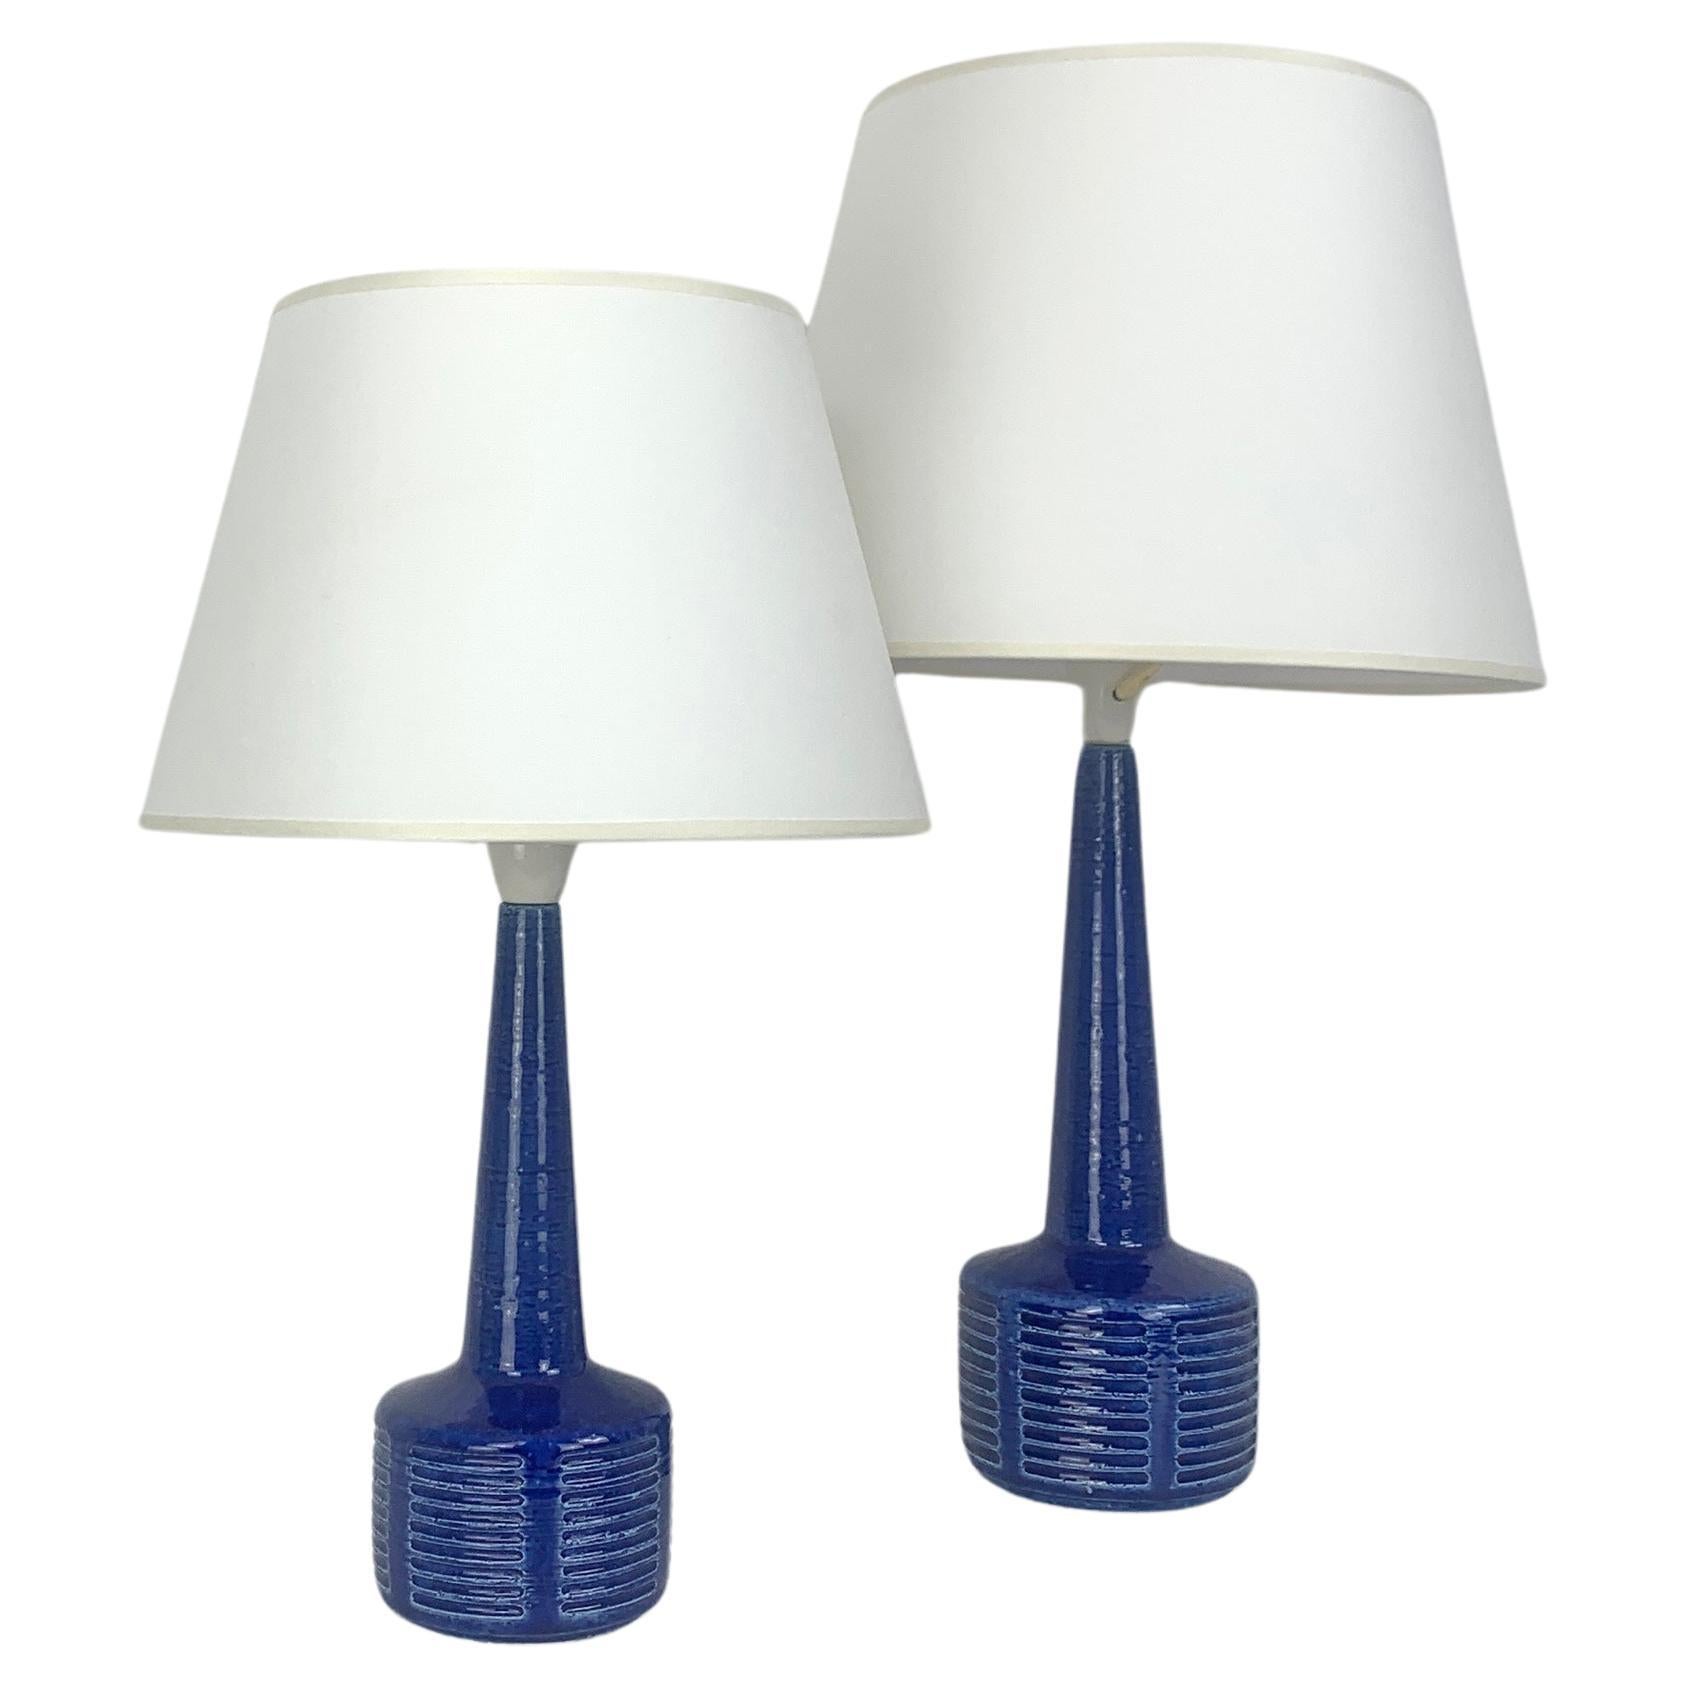 Pair blue ceramic table lamps by Palshus Denmark, stoneware Linnemann-Schmidt